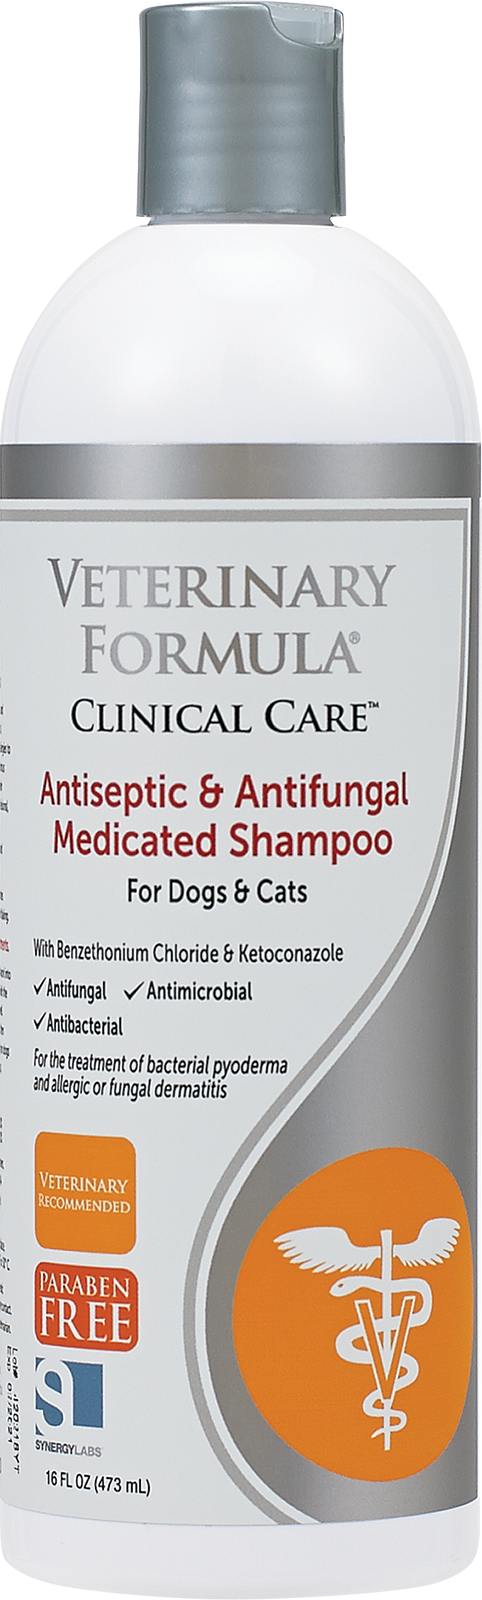 Synergy Labs Antiseptic & Antifungal Medicated Shampoo